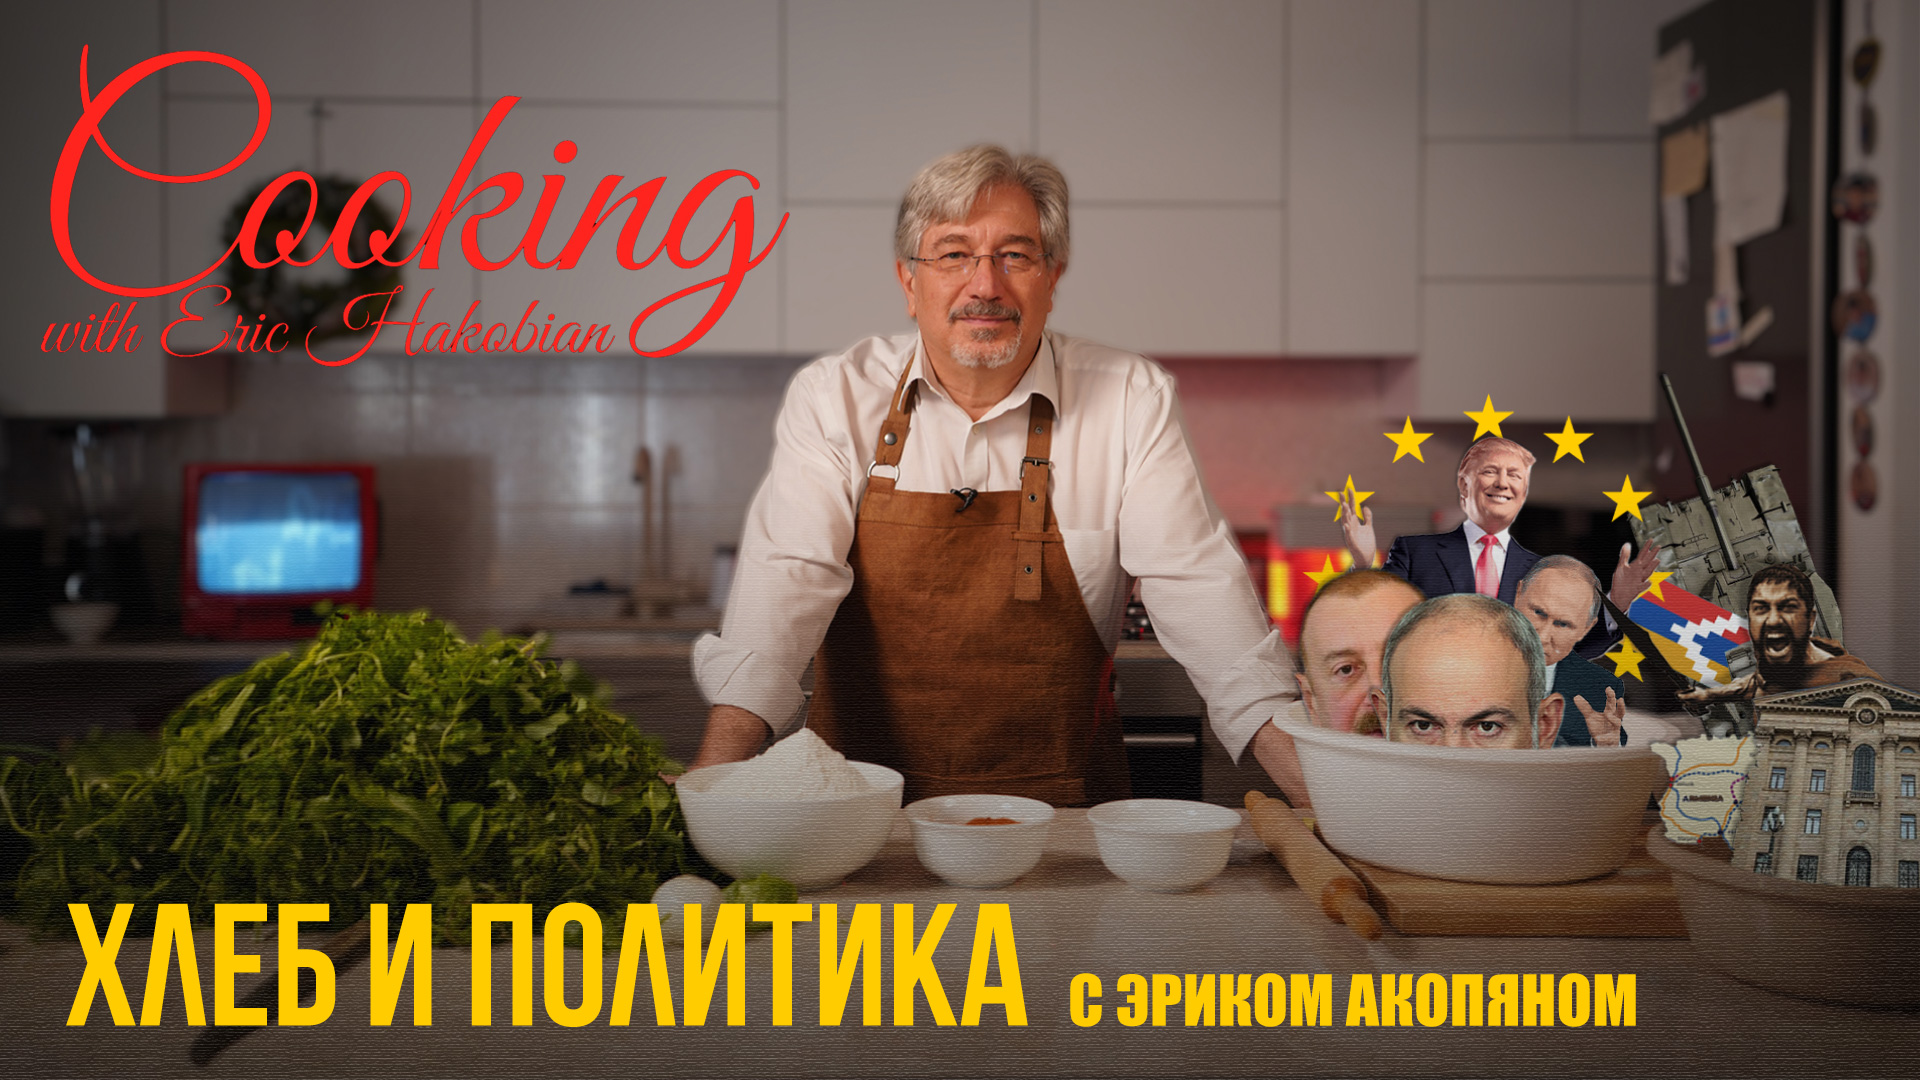 Erik-cooking-rus